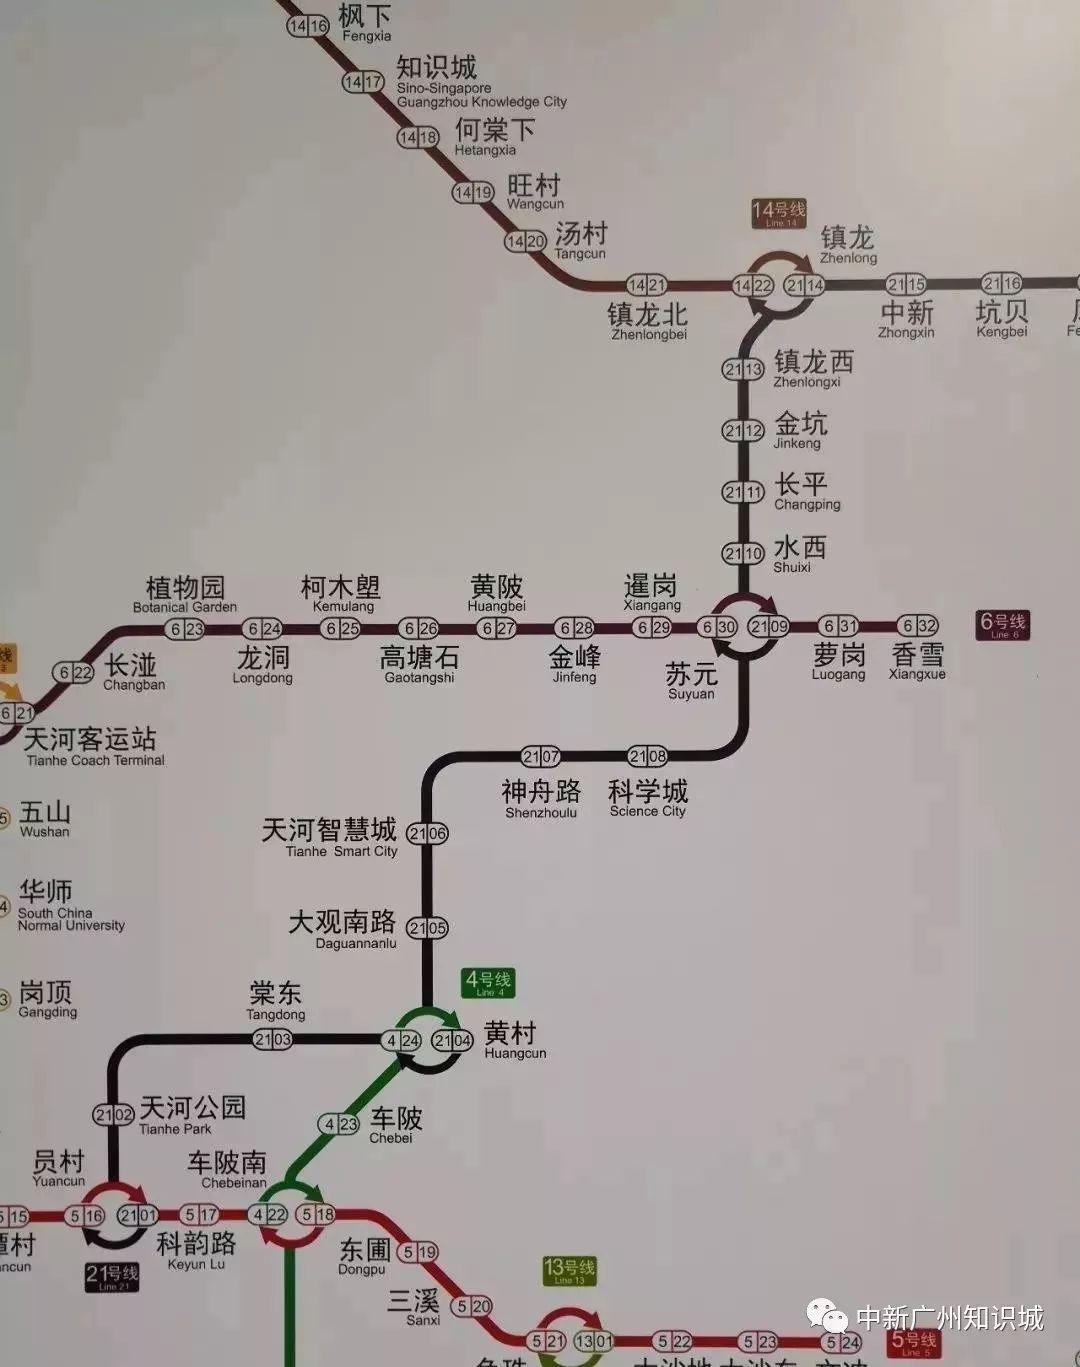 2线已纳入广州地铁最新线网图!